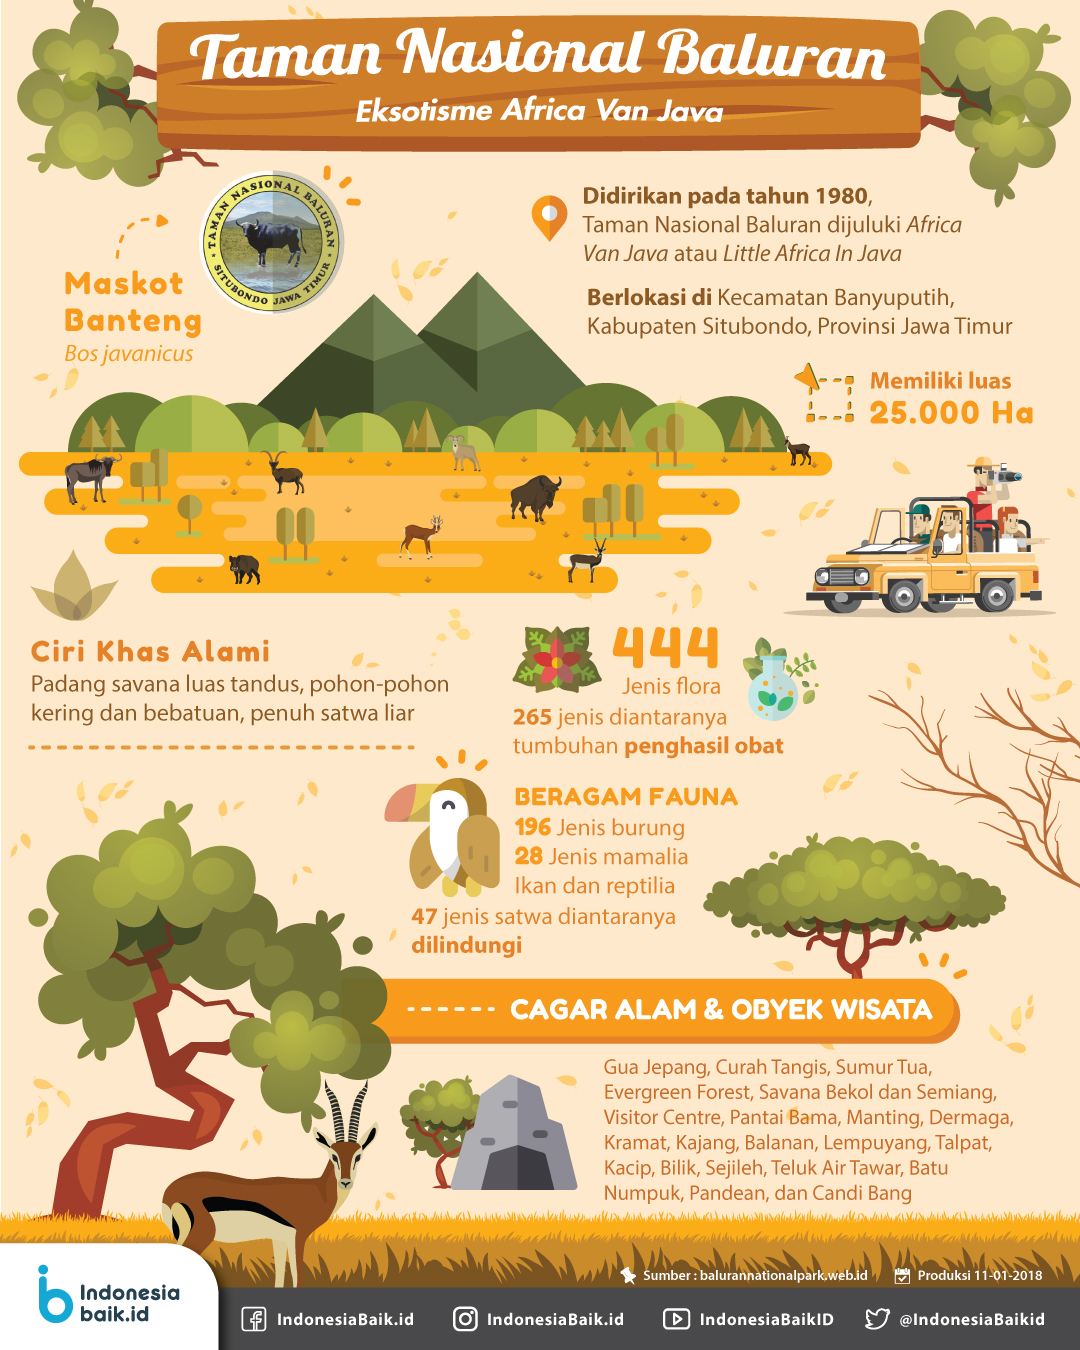 Taman Nasional Baluran Indonesia Baik